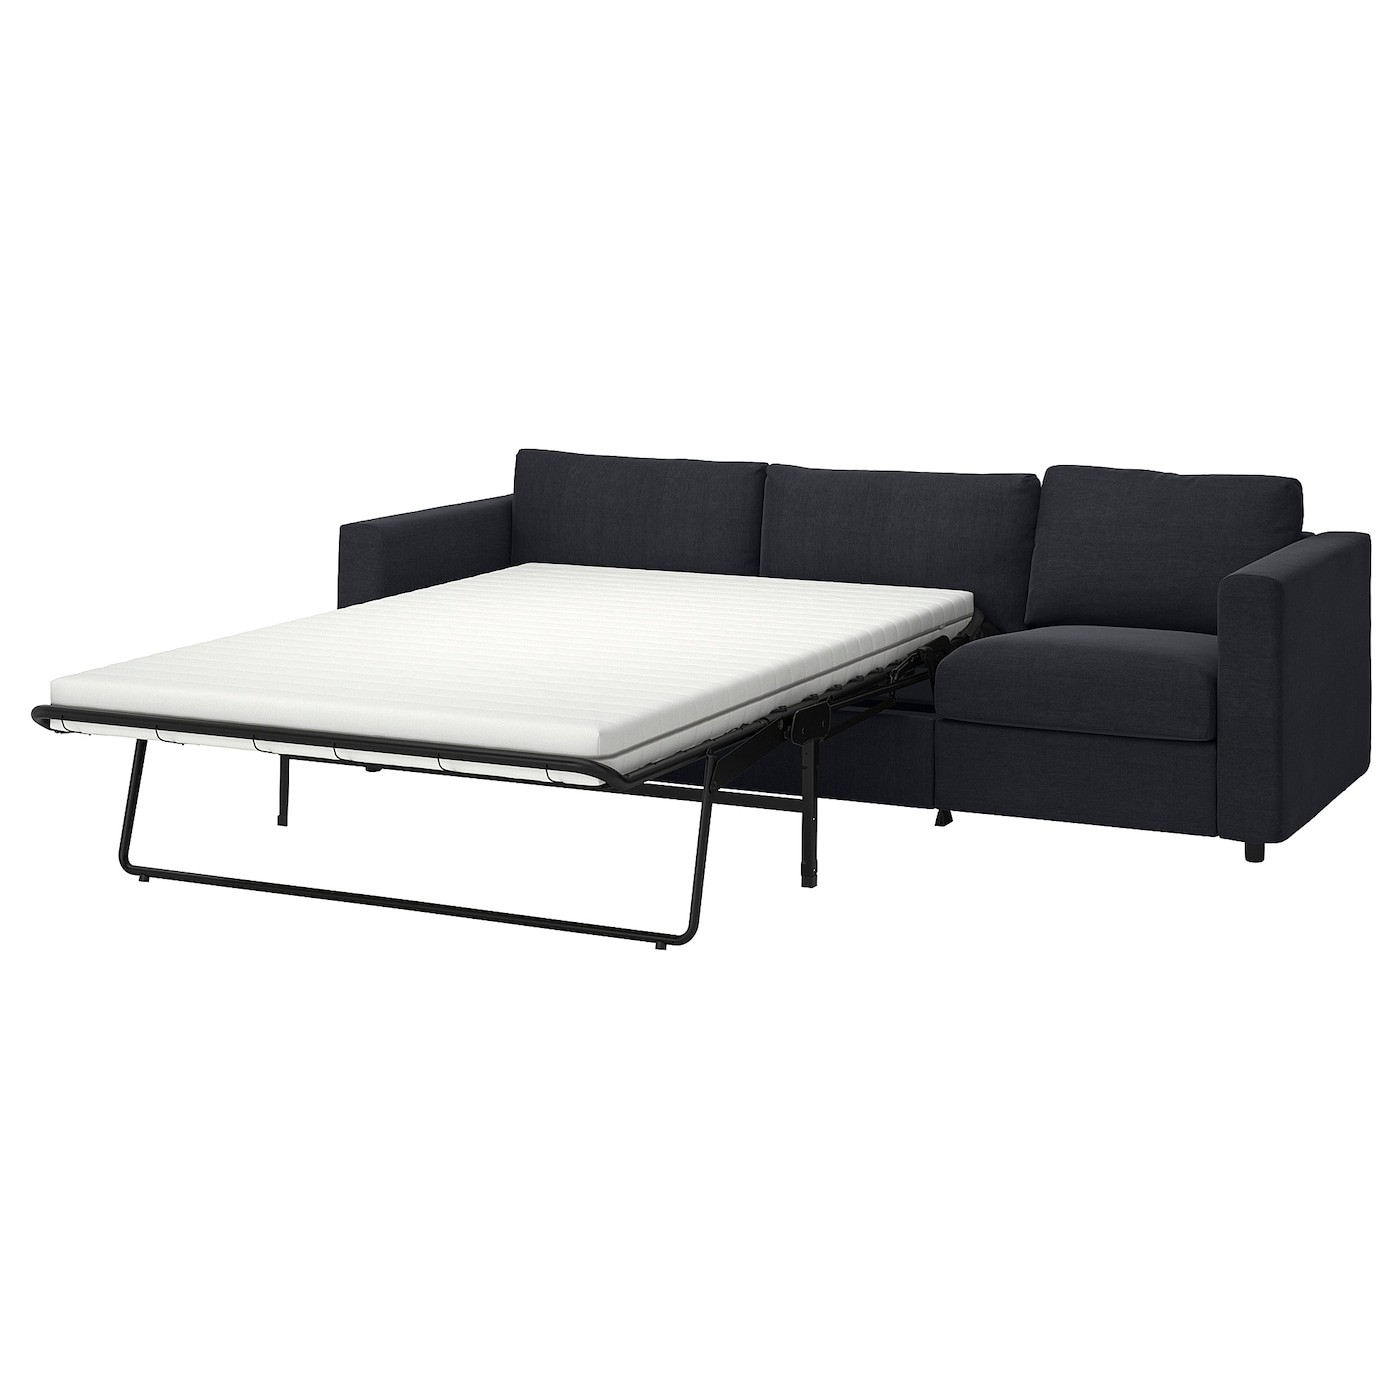 VIMLE 3-seat sofa-bed